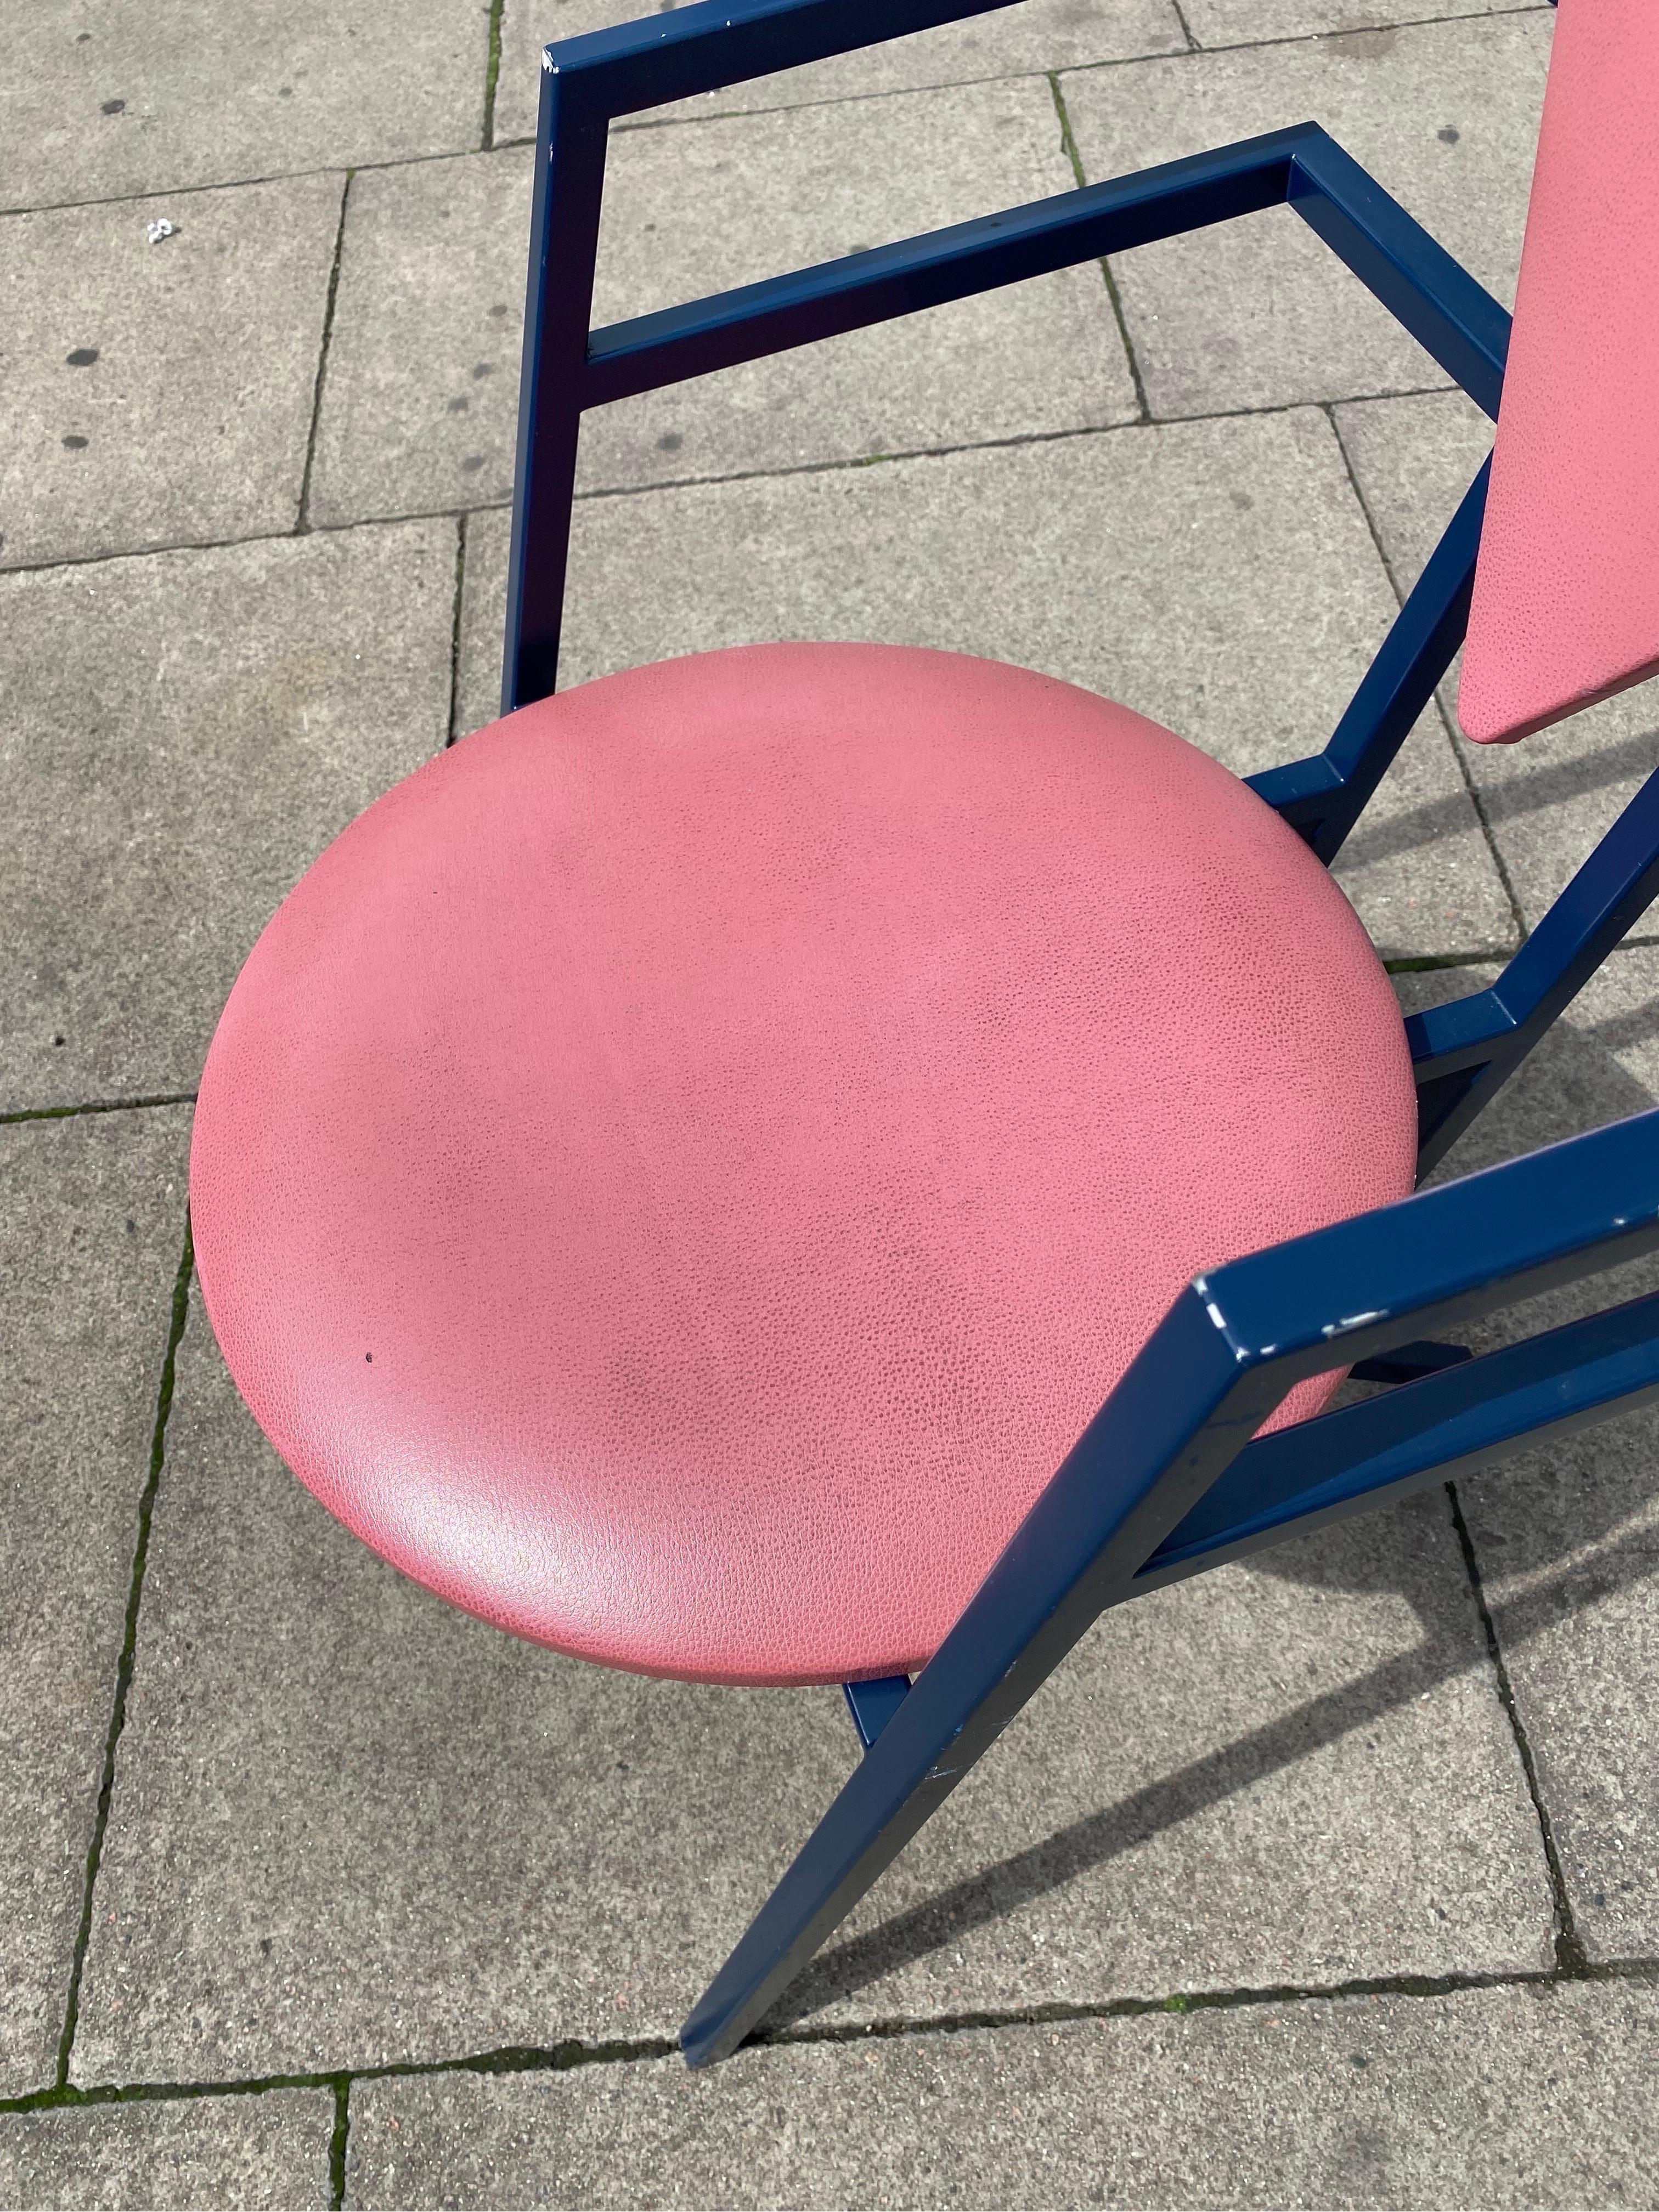 1 Druillet Postmodern 1980s Blue Pink Dining Chair Jean Allemand Vintage Desk For Sale 9